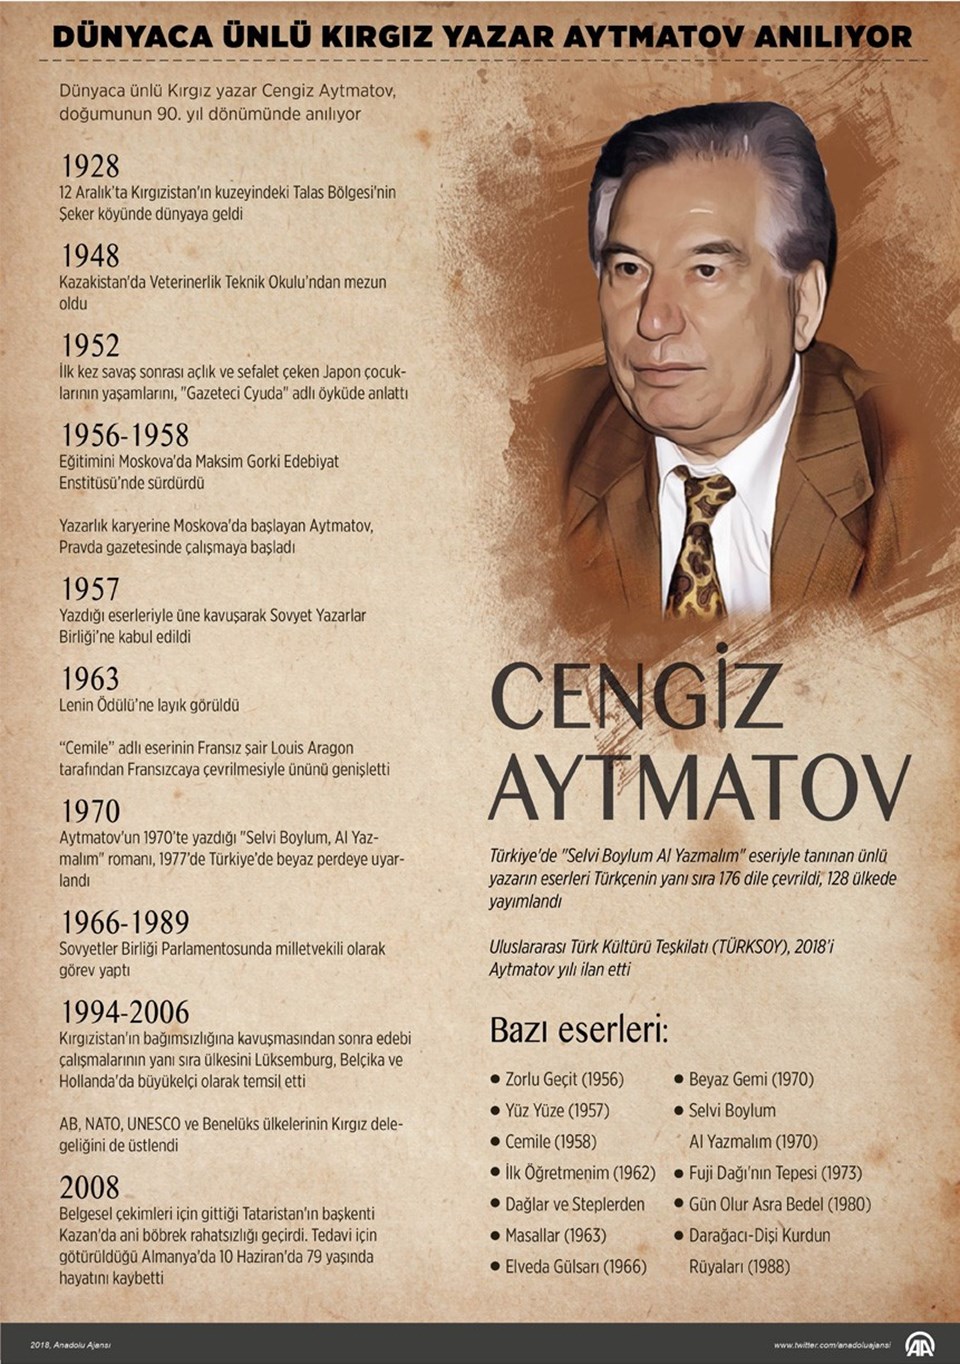 Dünyaca ünlü Kırgız yazar Cengiz Aytmatov anılıyor - 1